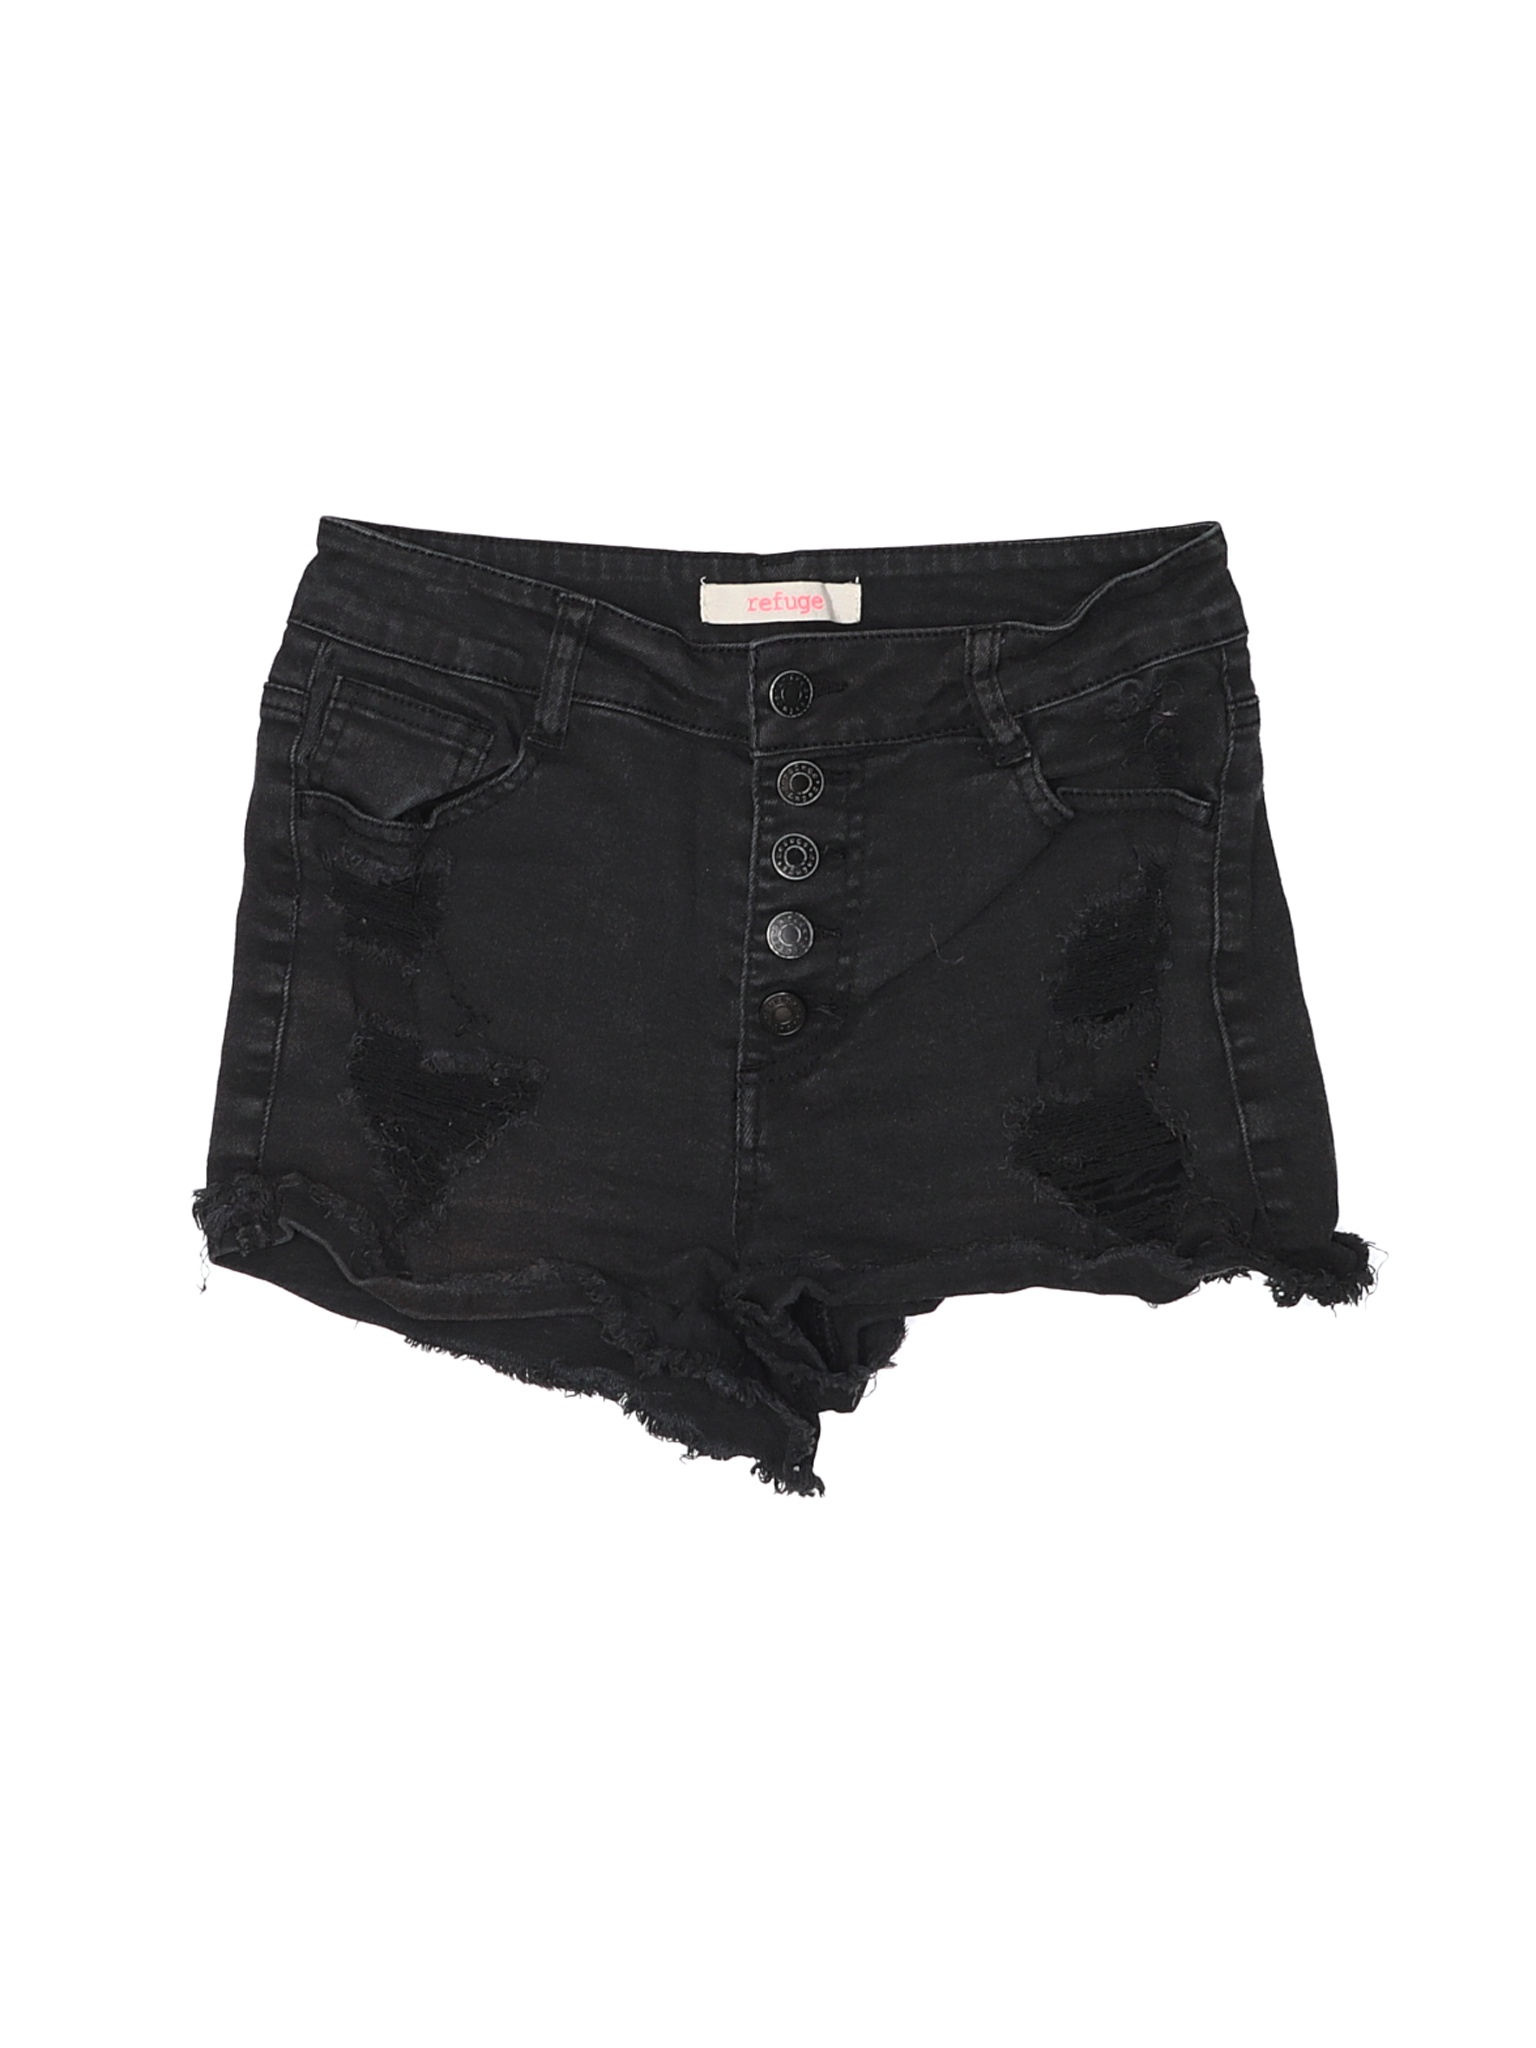 Refuge Women Black Denim Shorts 4 | eBay